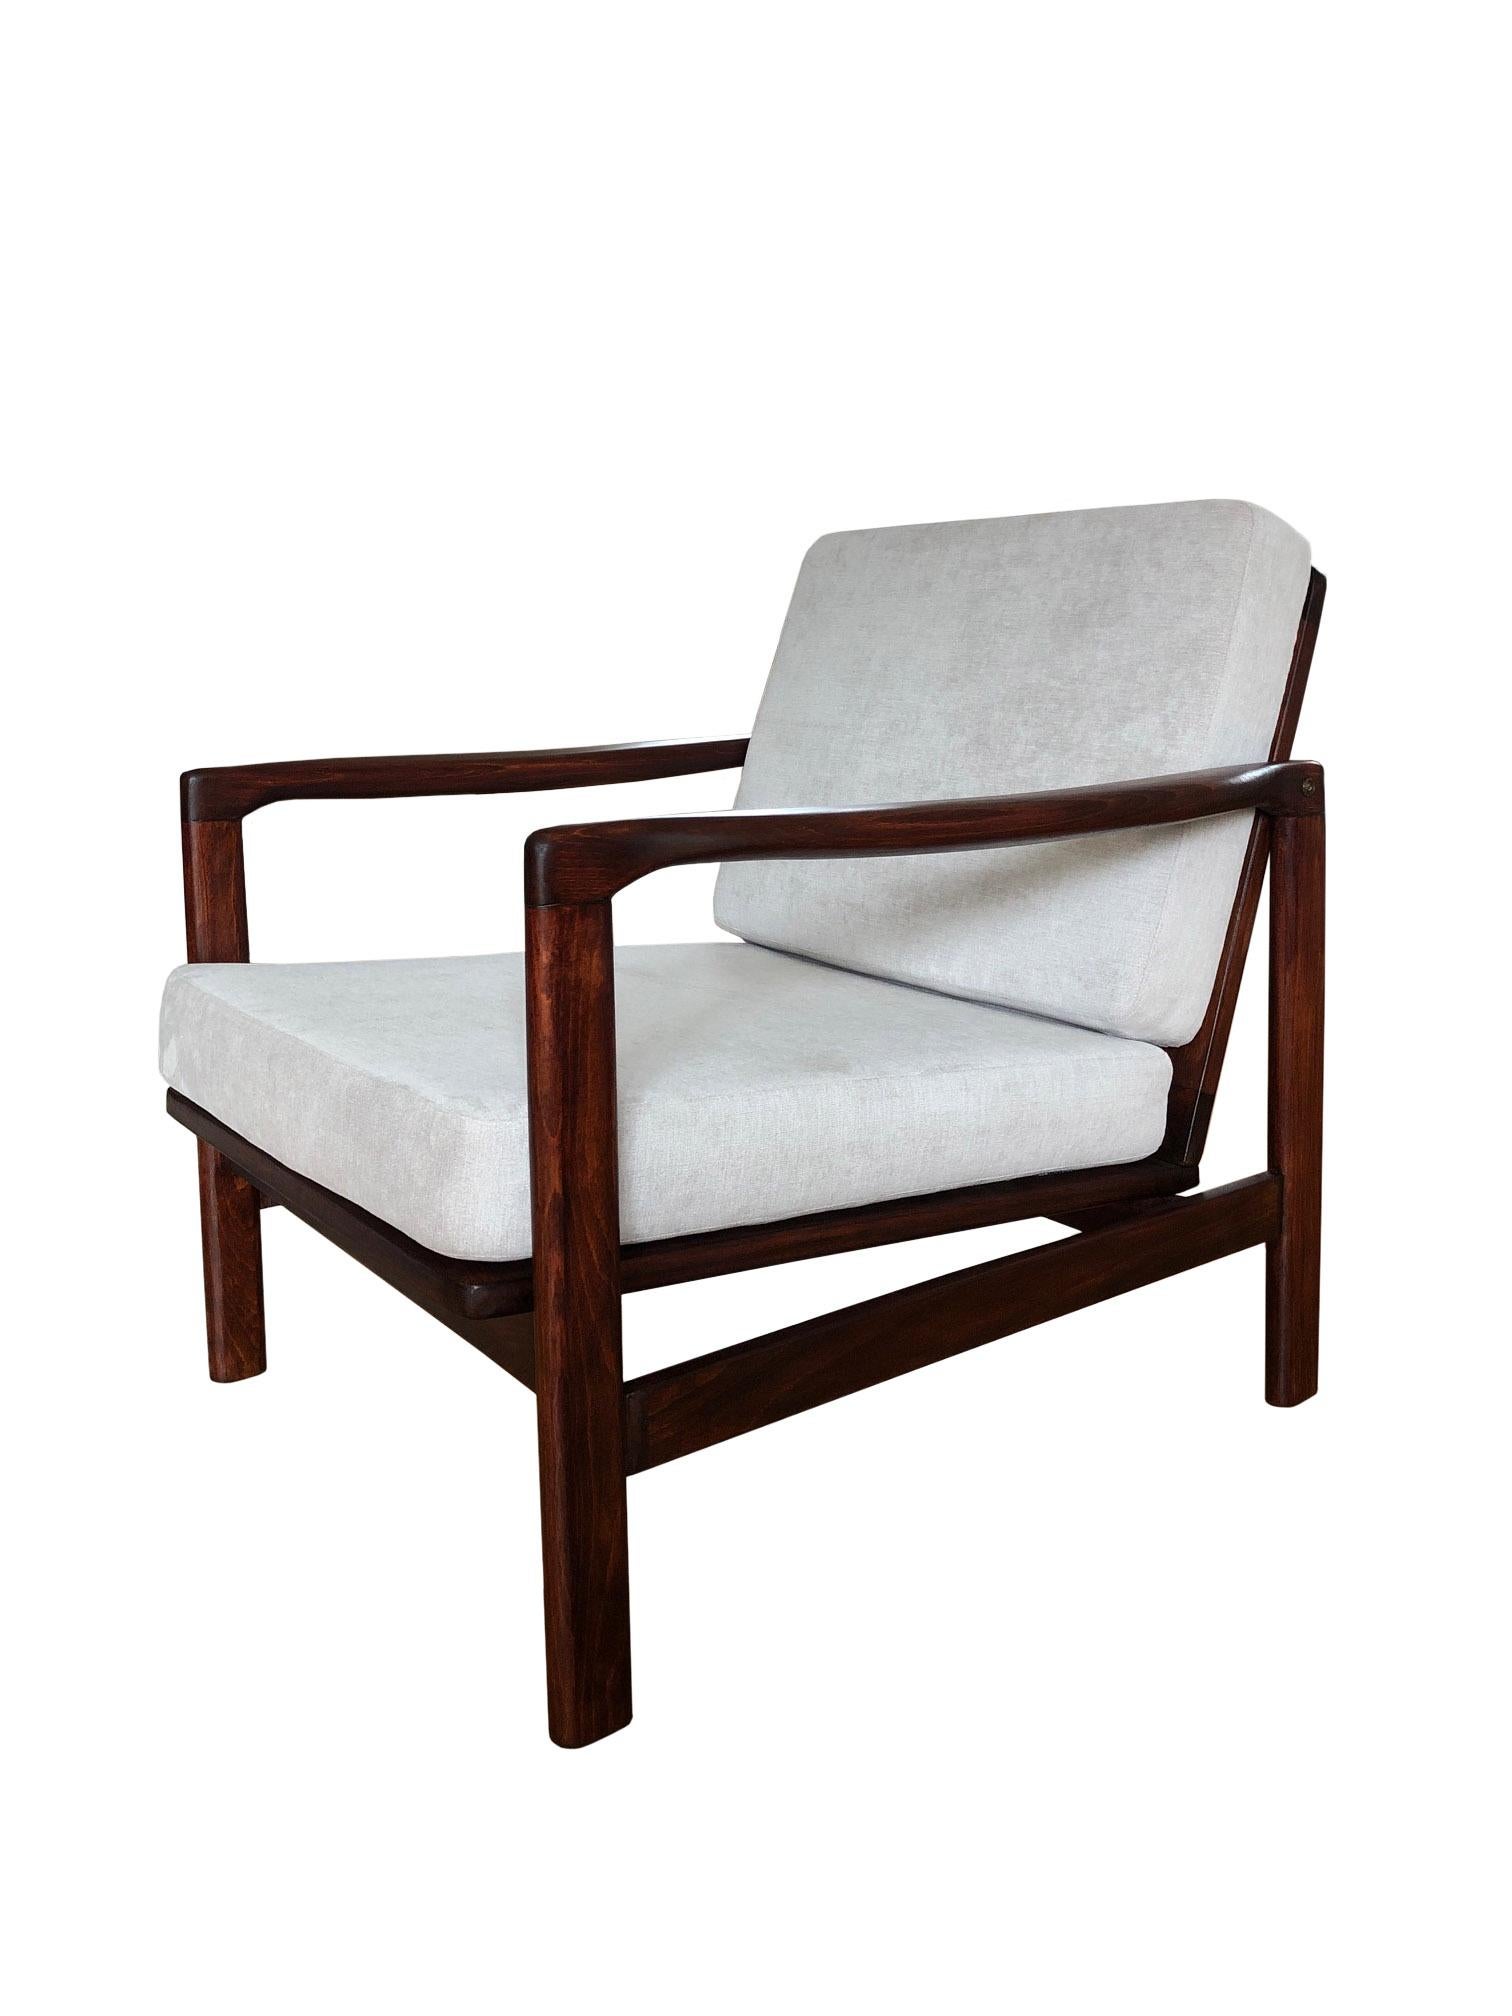 Das Set aus zwei Sesseln, Modell B-7752, entworfen von Zenon Baczyk, wurde in den 1960er Jahren von Swarzedzkie Fabryki Mebli in Polen hergestellt. Die Struktur ist aus Buchenholz in einer warmen Nussbaumfarbe gefertigt und mit einem halbmatten Lack